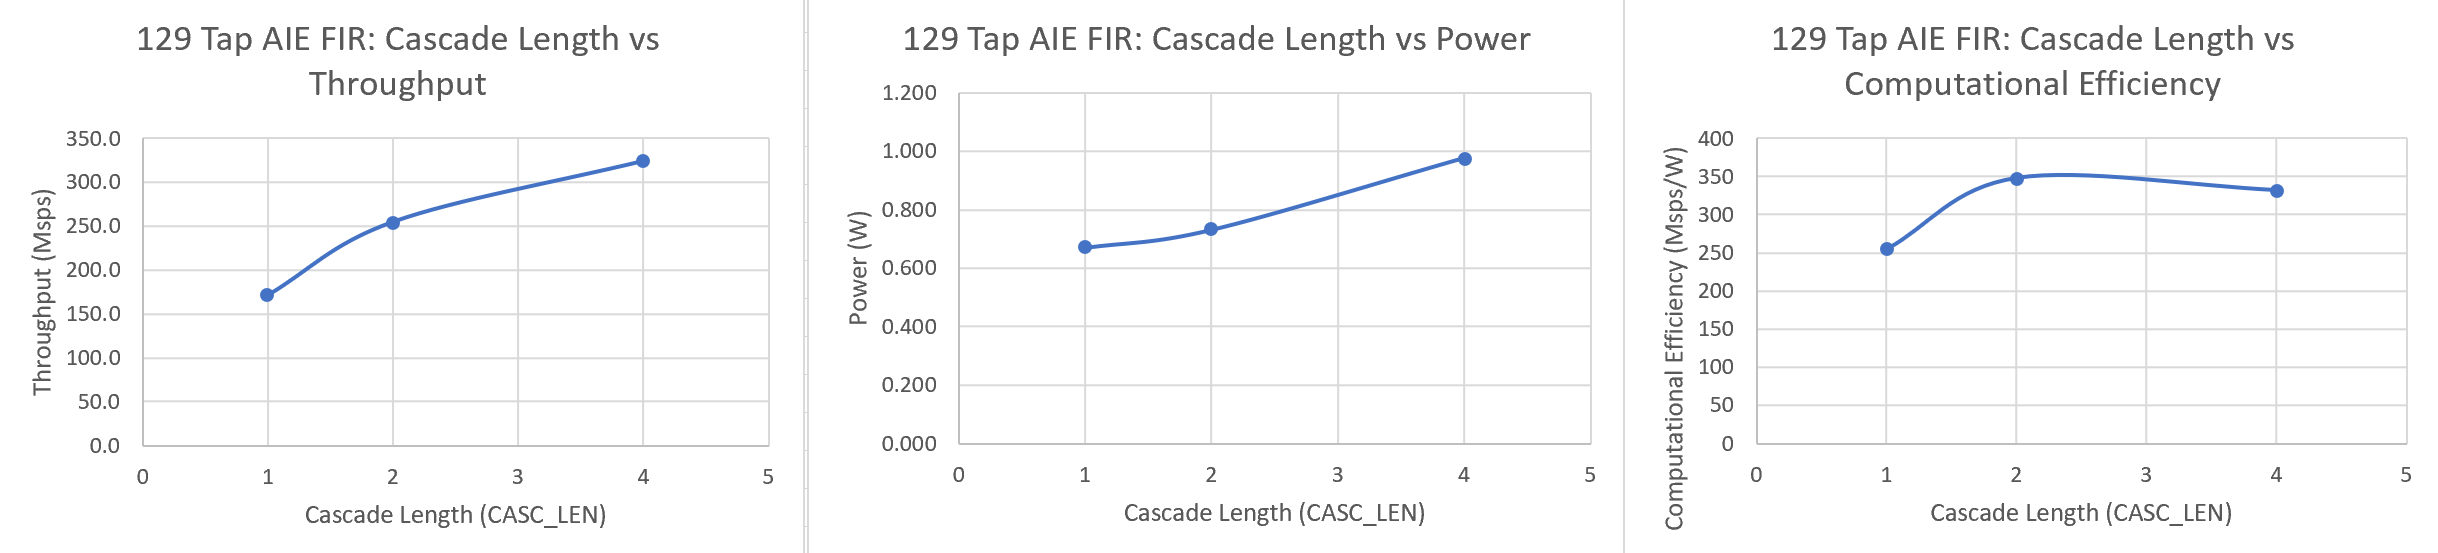 Image of 129 Tap FIR filter metrics